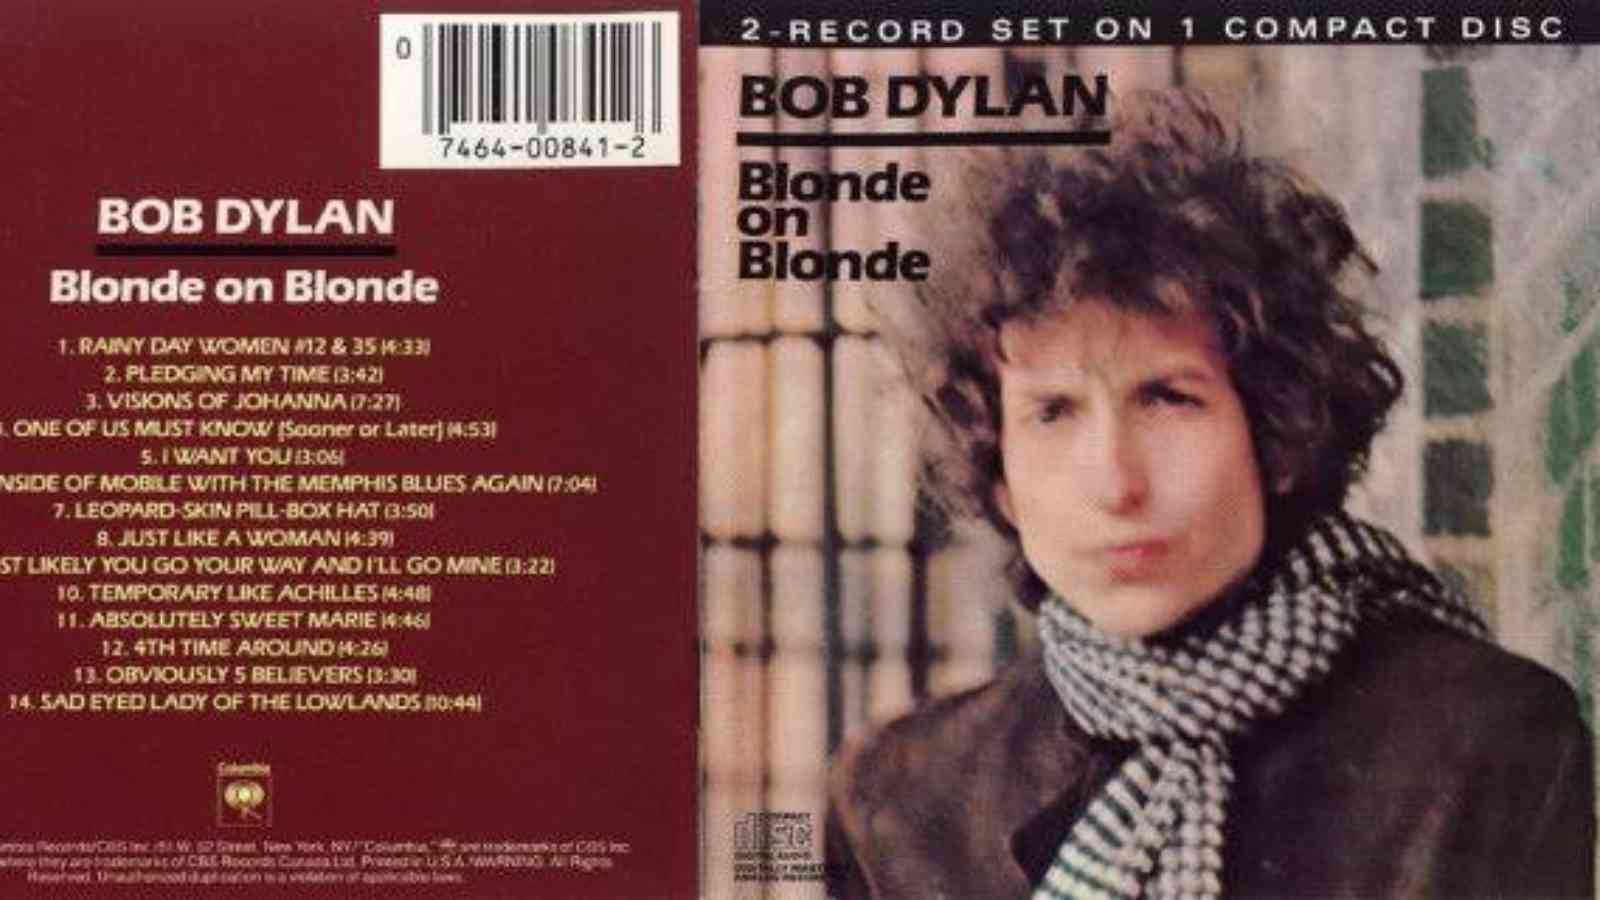 Bob Dylan's Blonde on Blonde